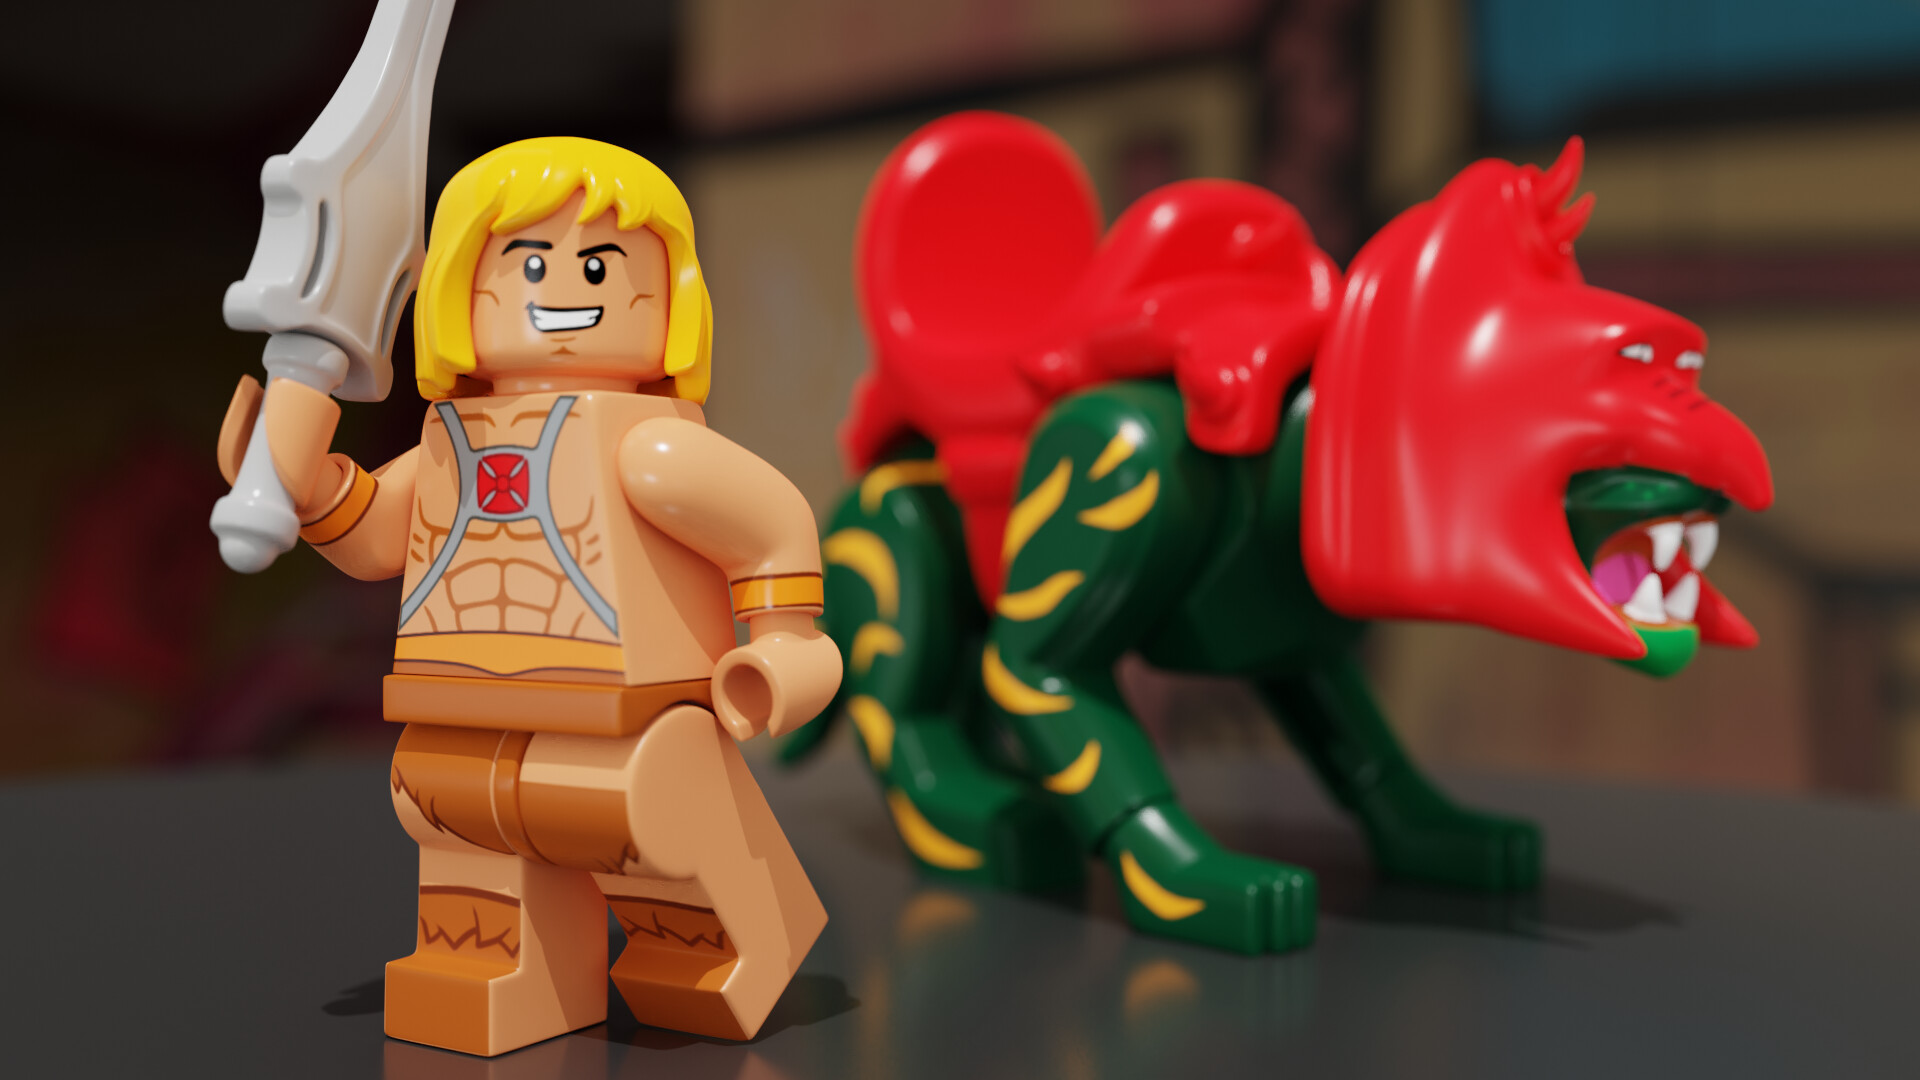 præcedens stakåndet Måling ArtStation - He-Man and Battle-Cat Lego Models rendered in Blender Cycles